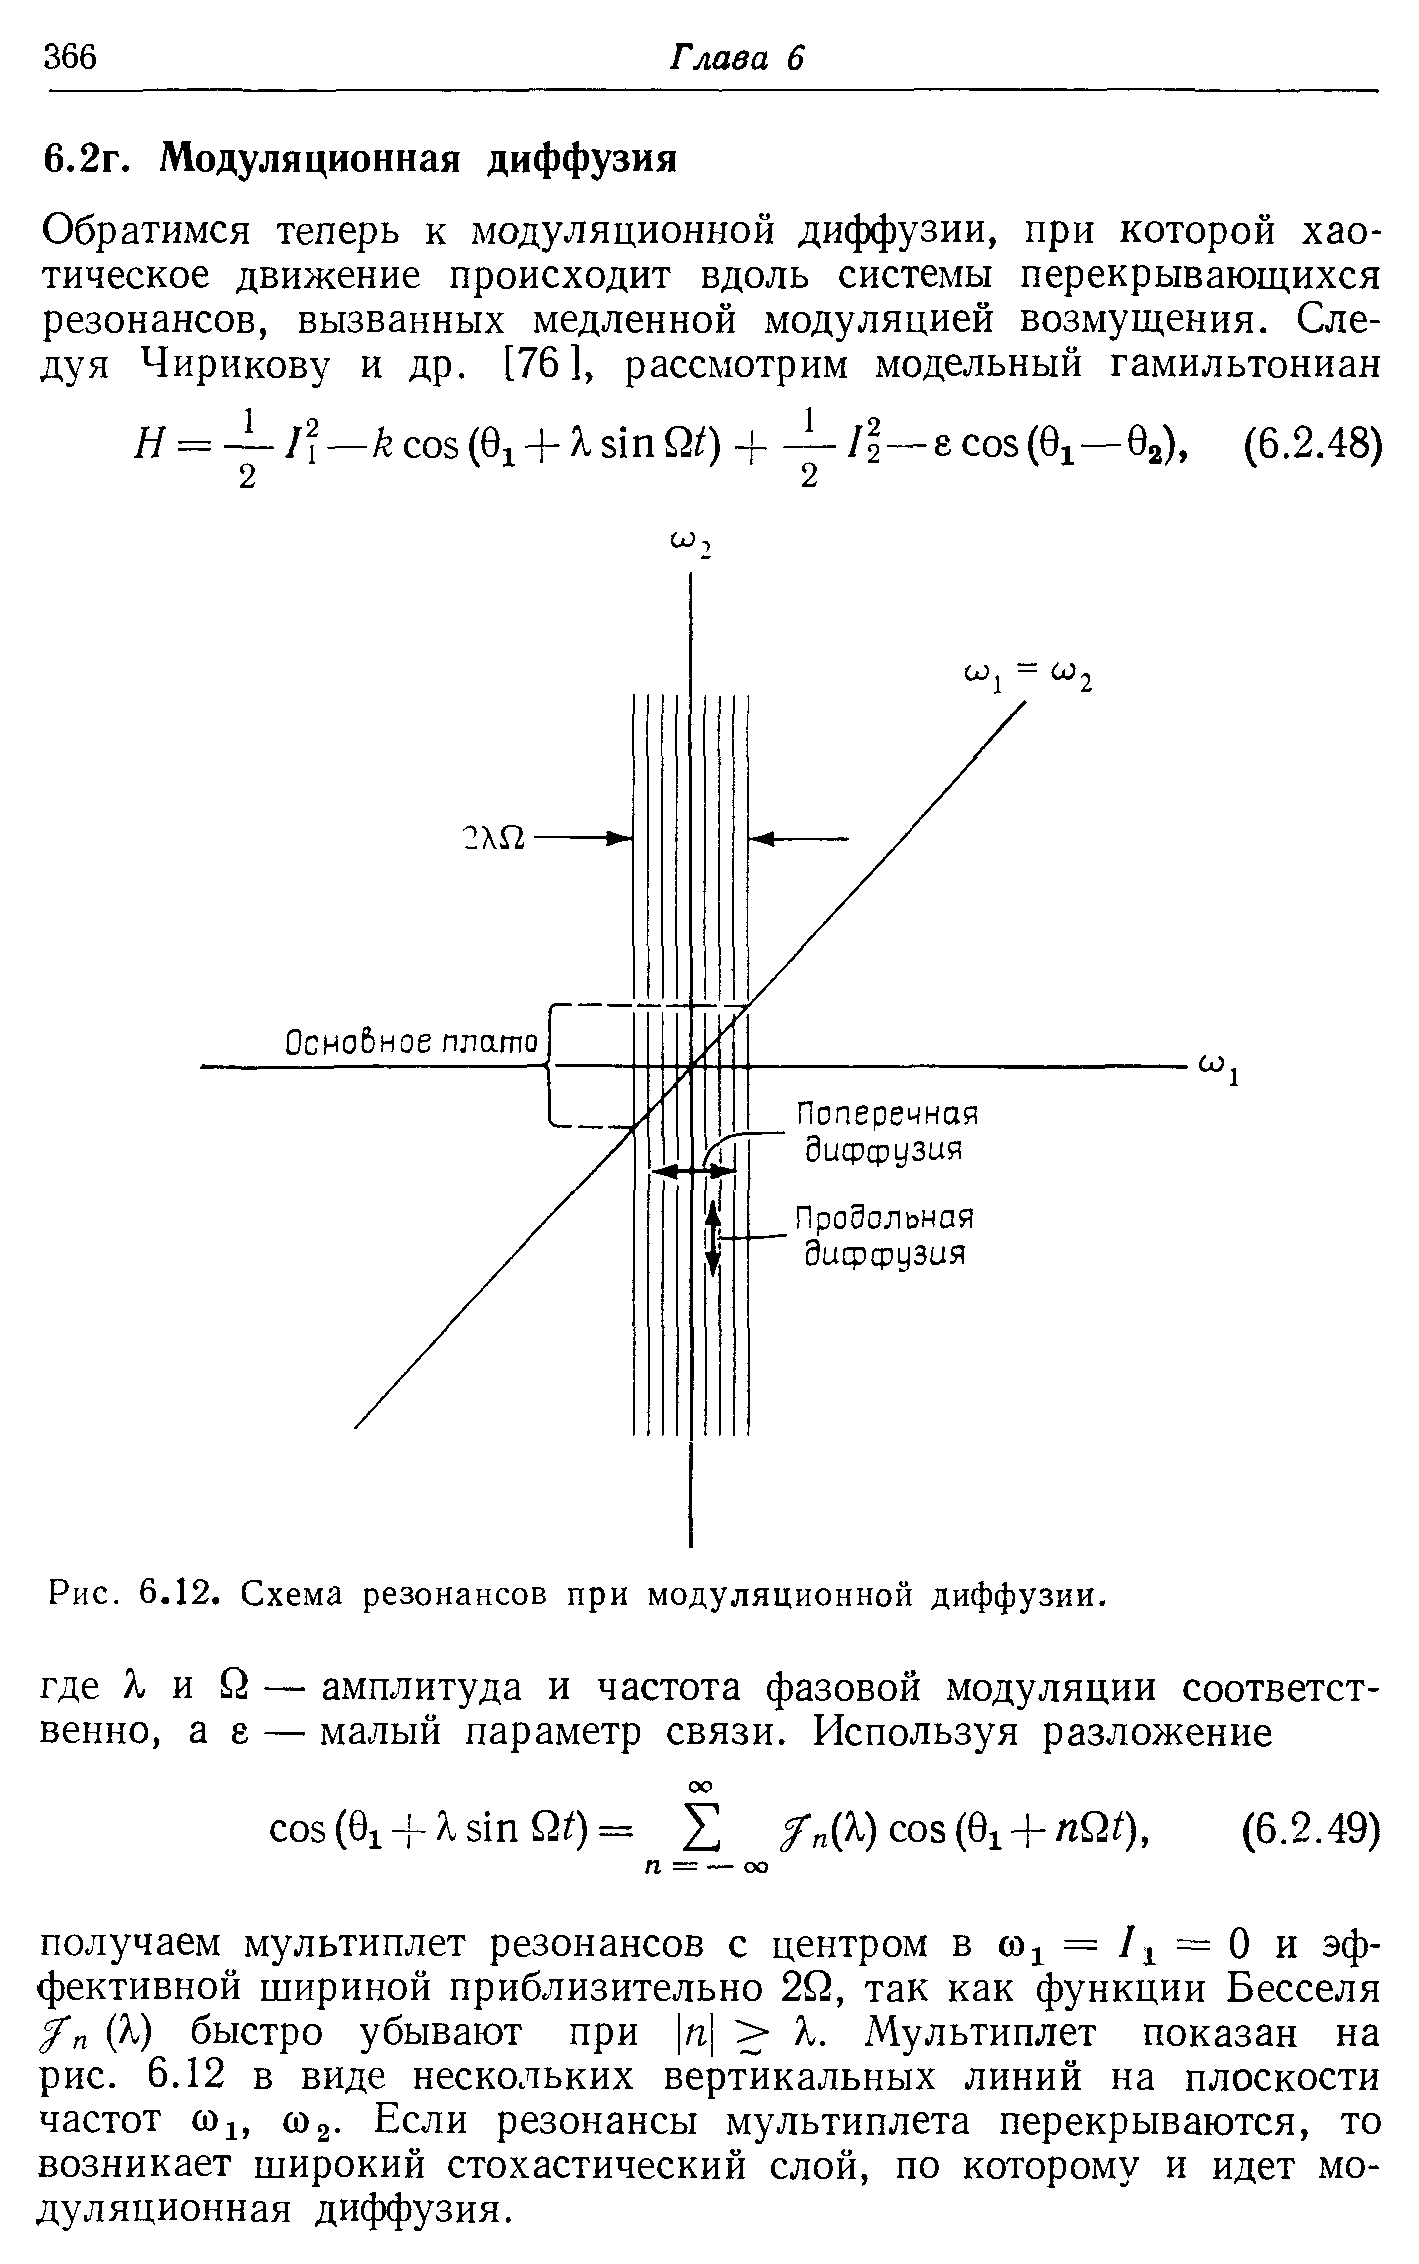 Рис. 6.12. Схема резонансов при модуляционной диффузии.
